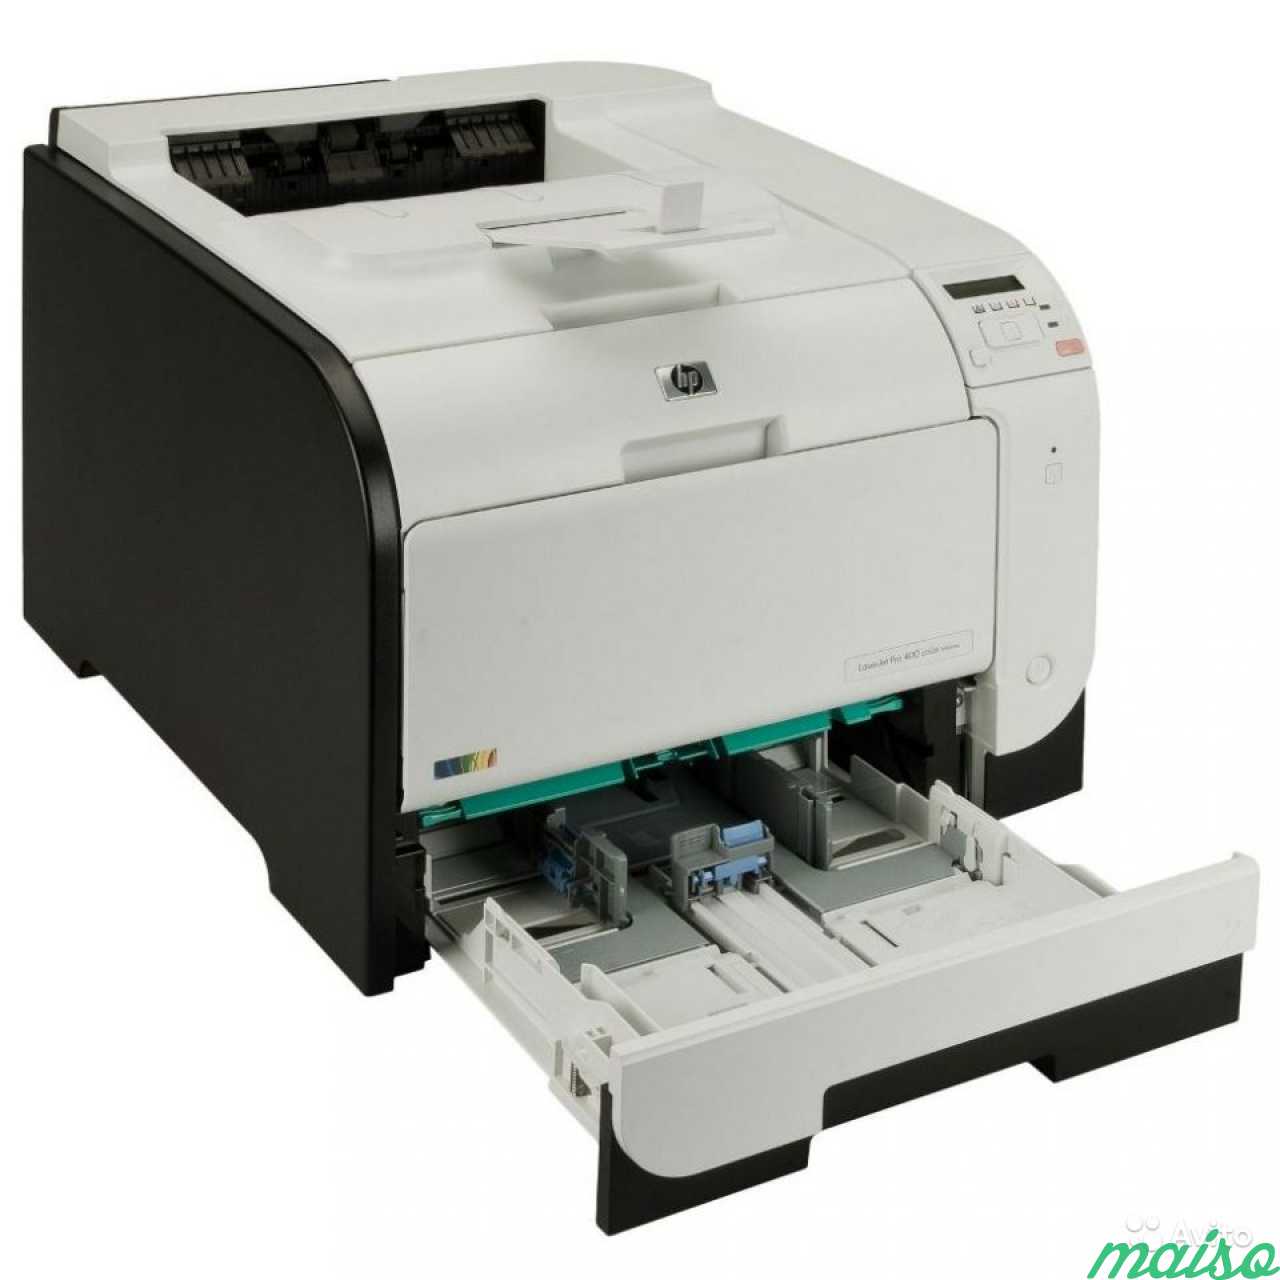 Принтер цветной HP LaserJet Pro 400 Color M451DN в Санкт-Петербурге. Фото 2